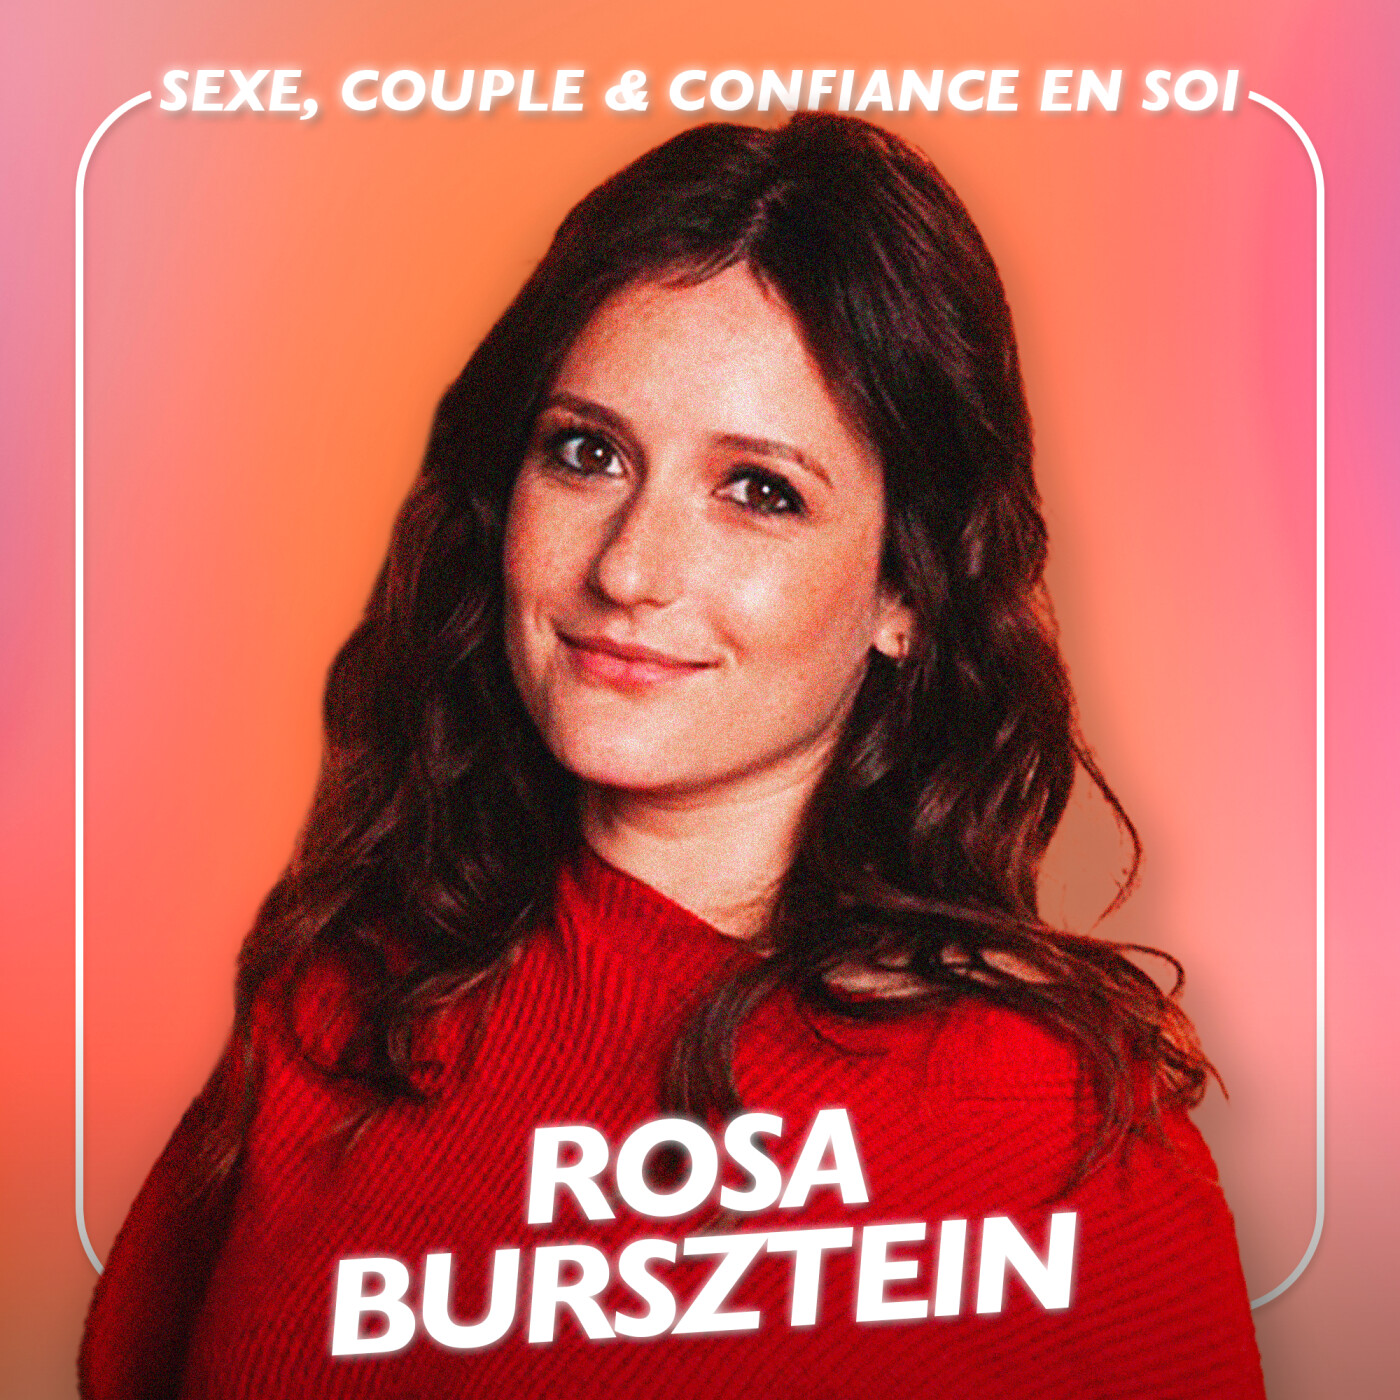 Rosa Bursztein, Comédienne - Sexe, Couple & Confiance en soi